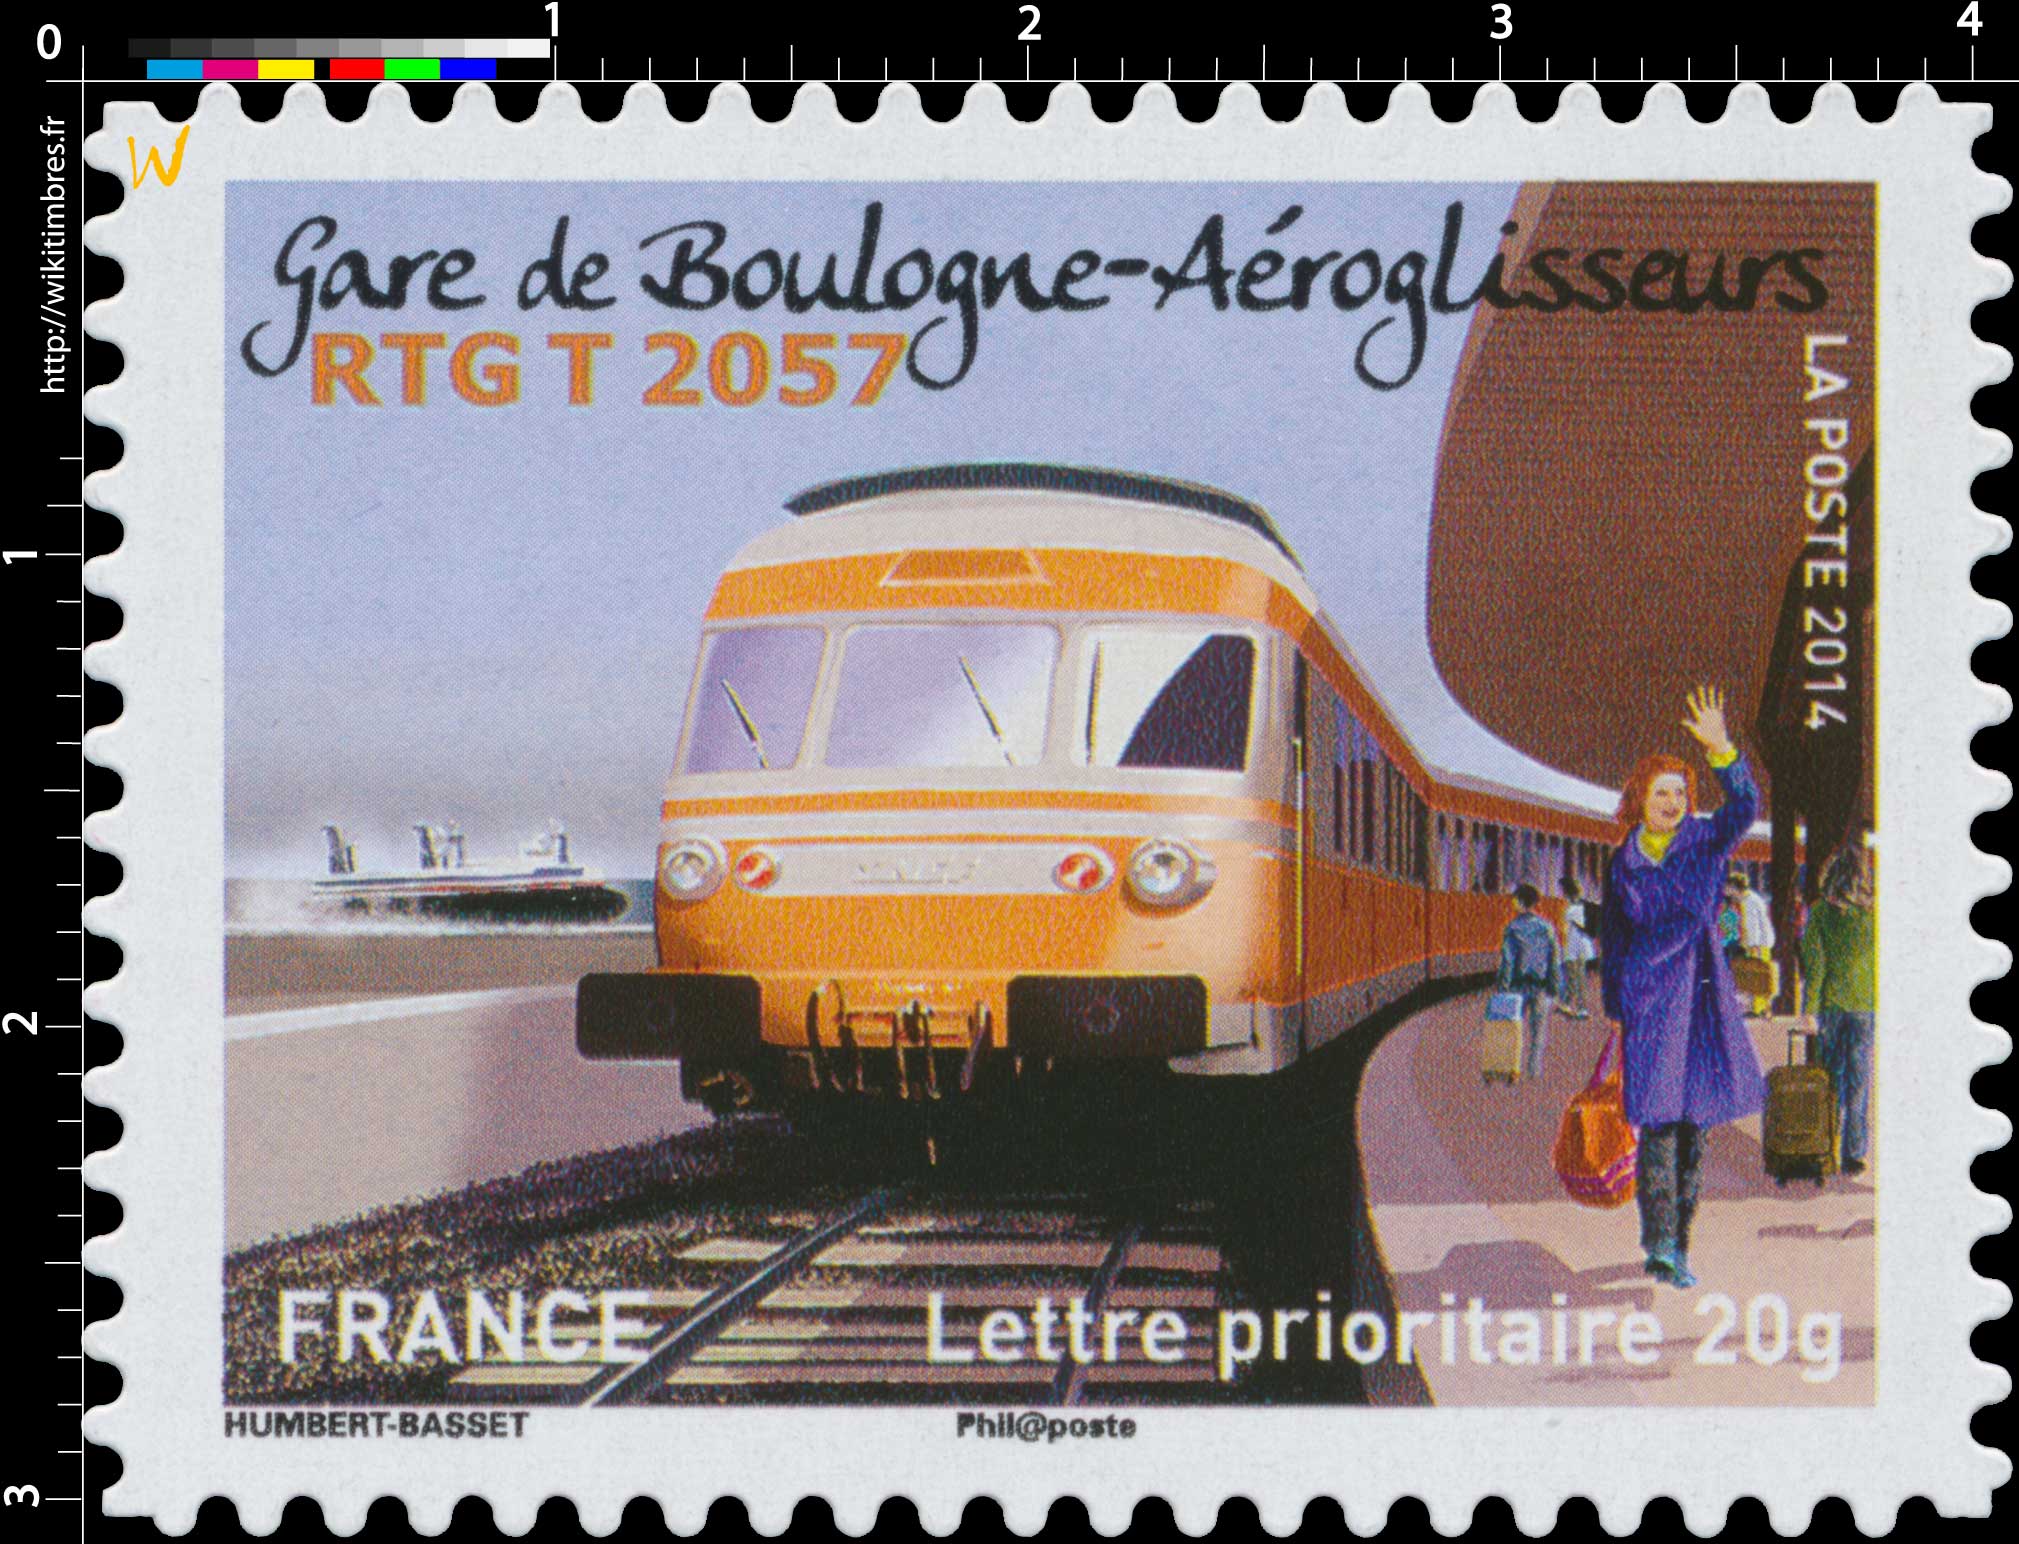 2014 Gare de Boulogne-Aéroglisseurs RGT T 2057